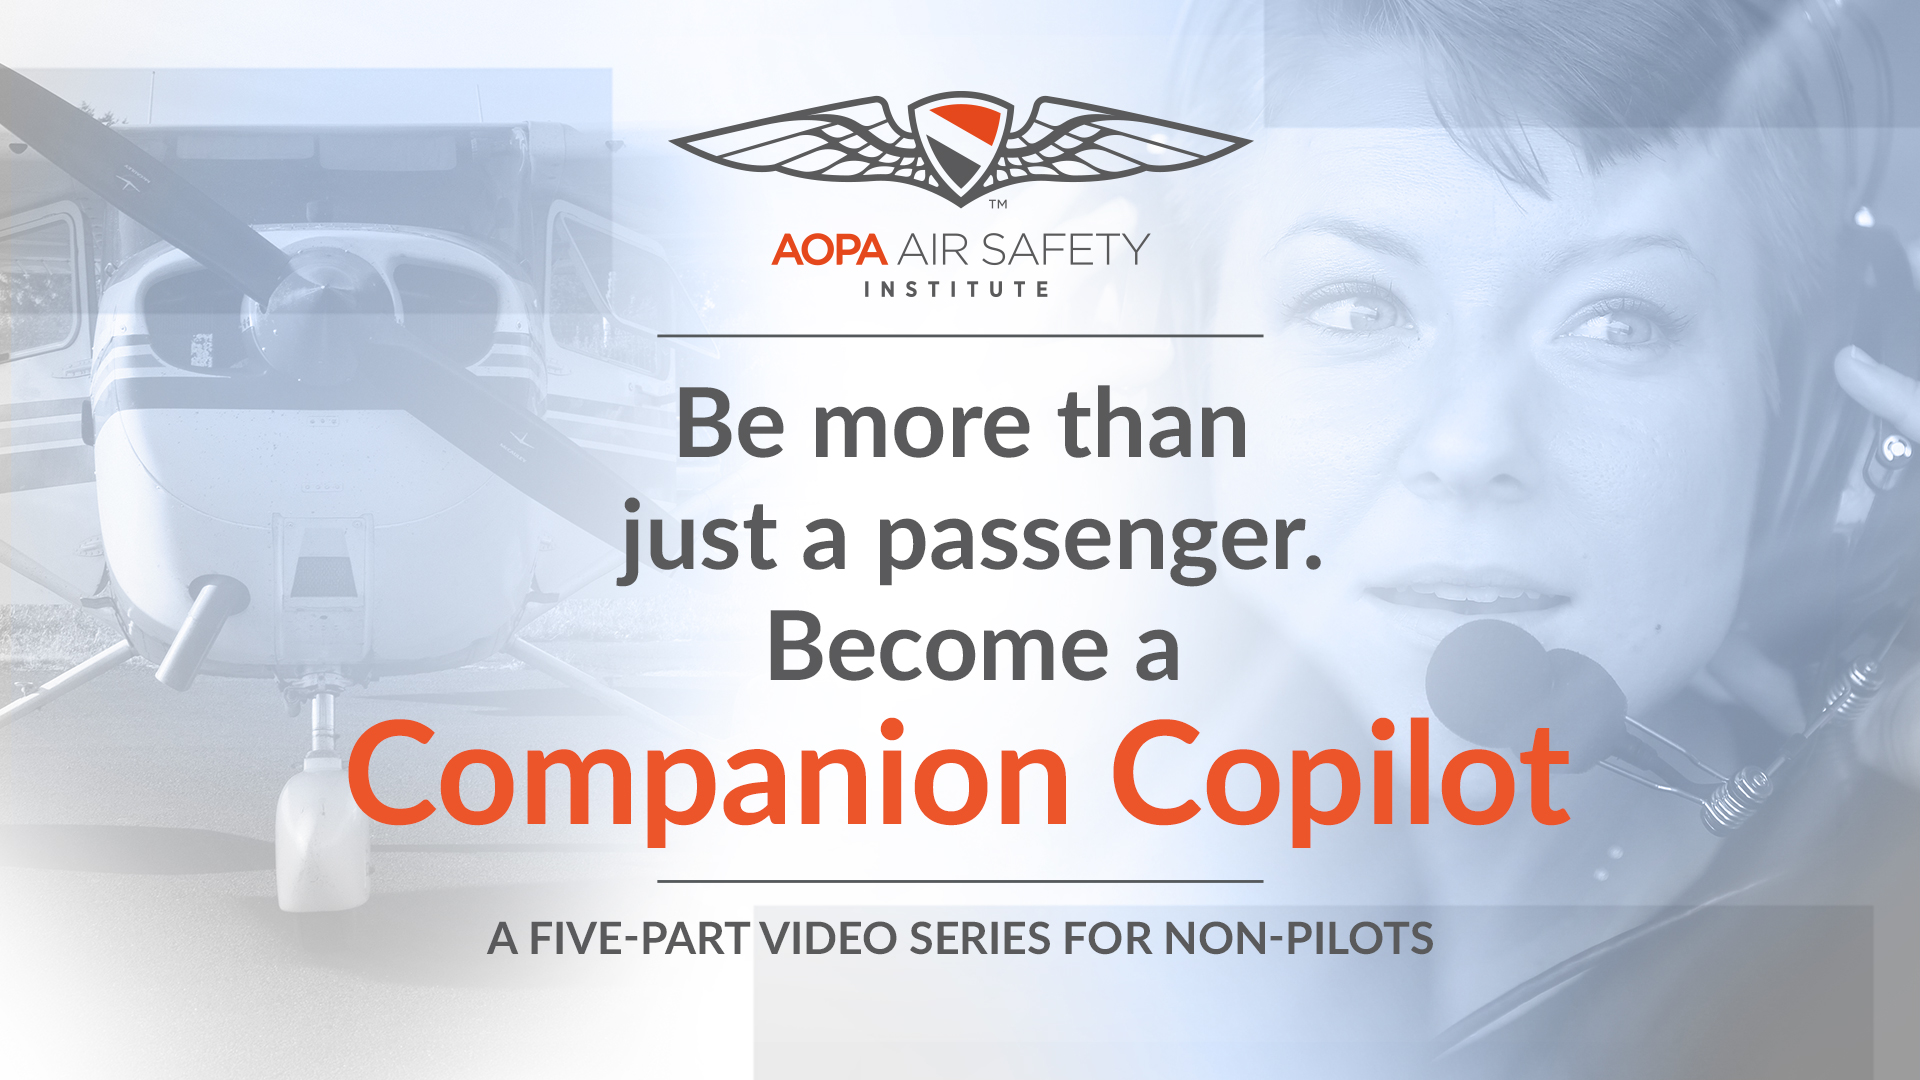 Companion Copilot Video Series for Non-pilots